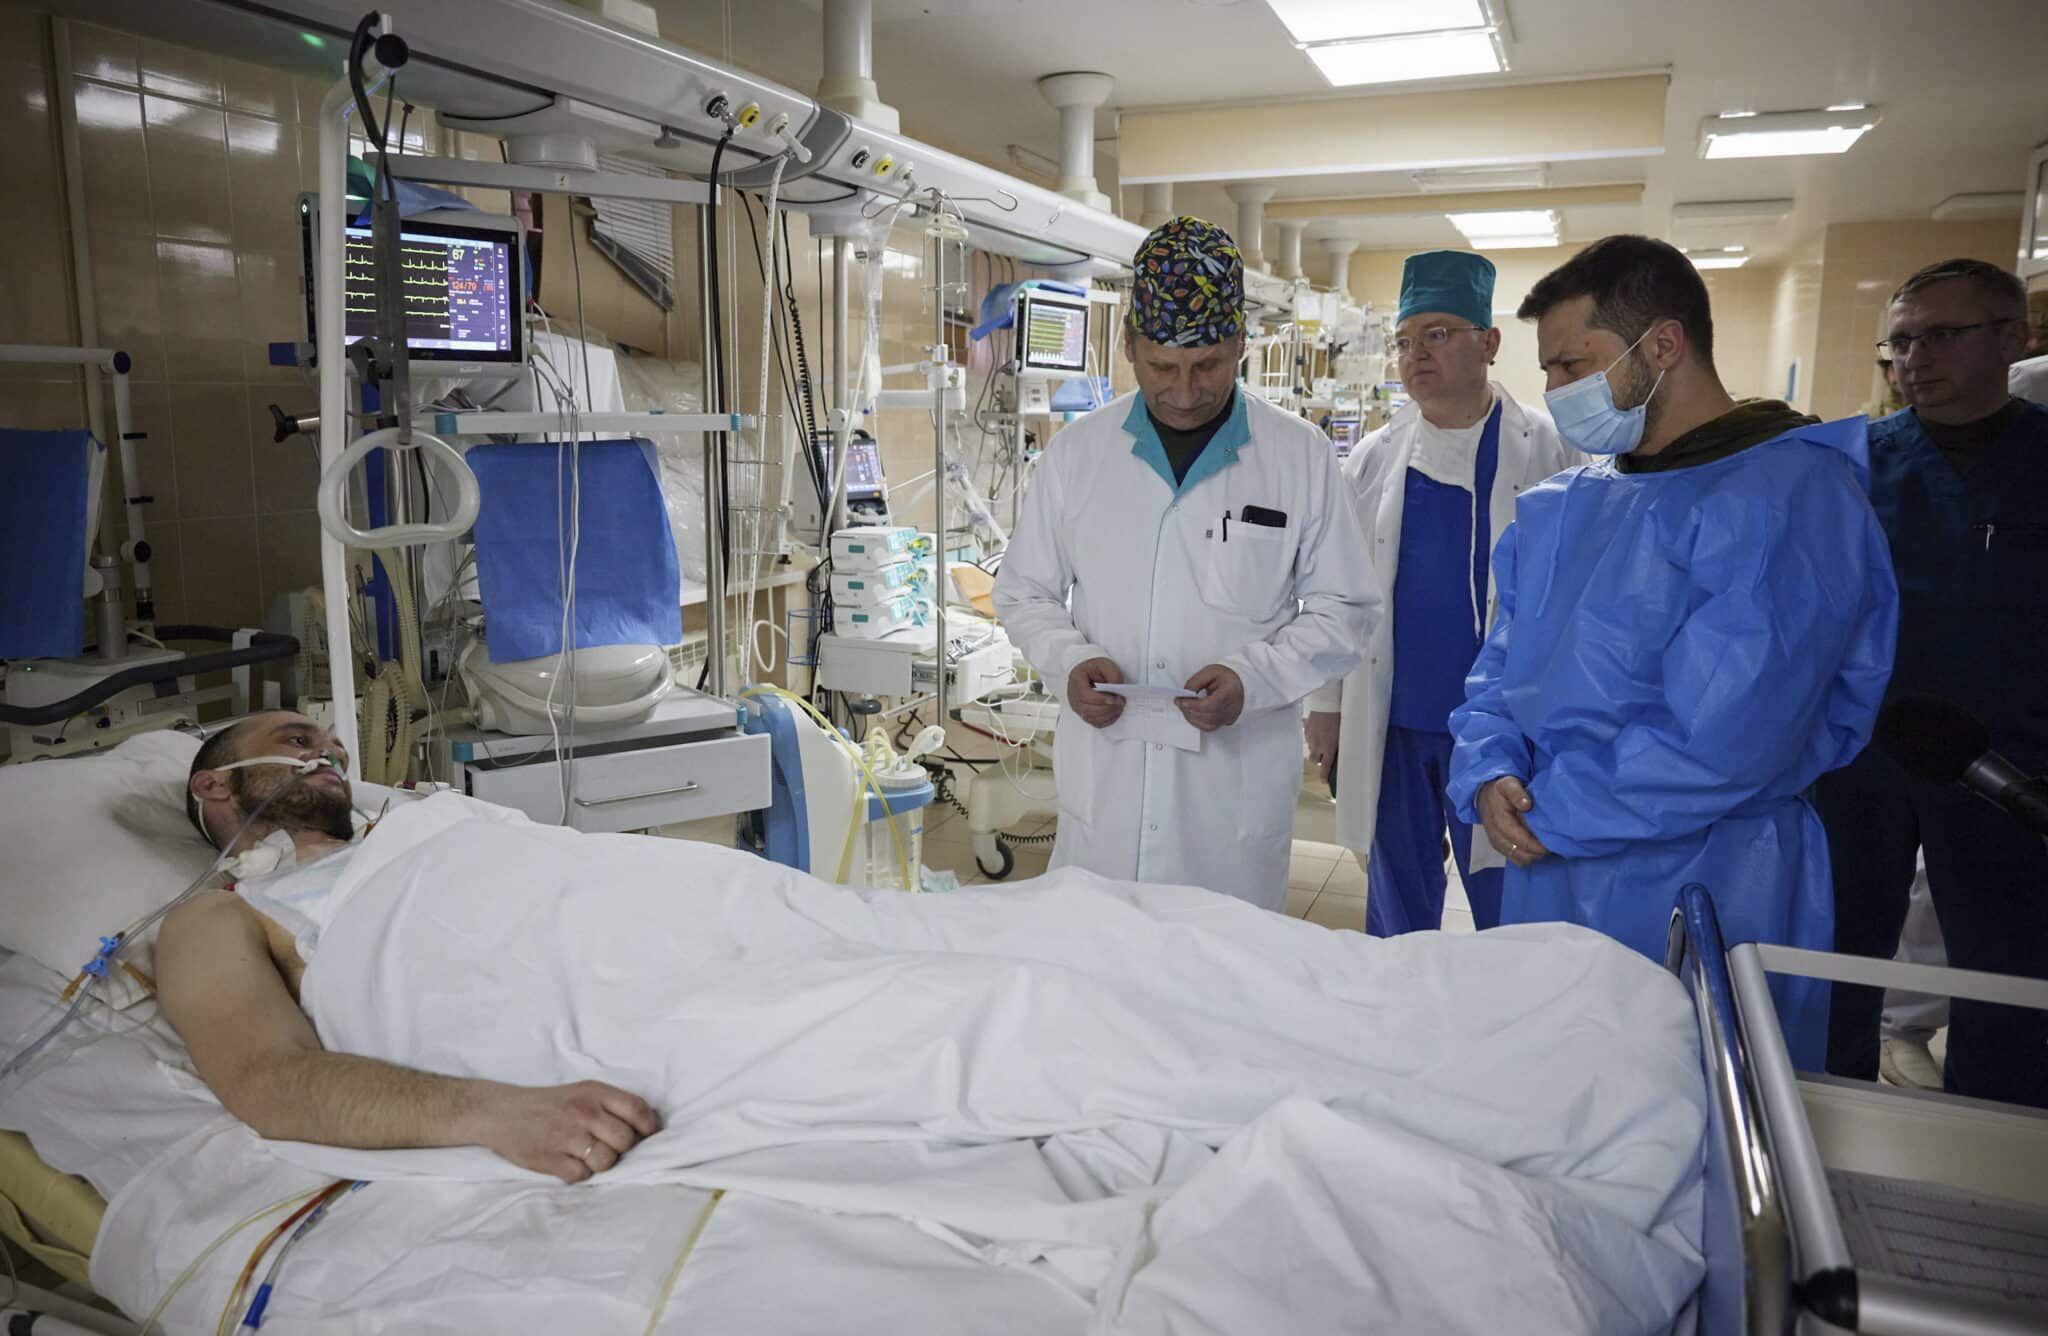 Zelenski visita a los soldados heridos en un hospital de Kiev